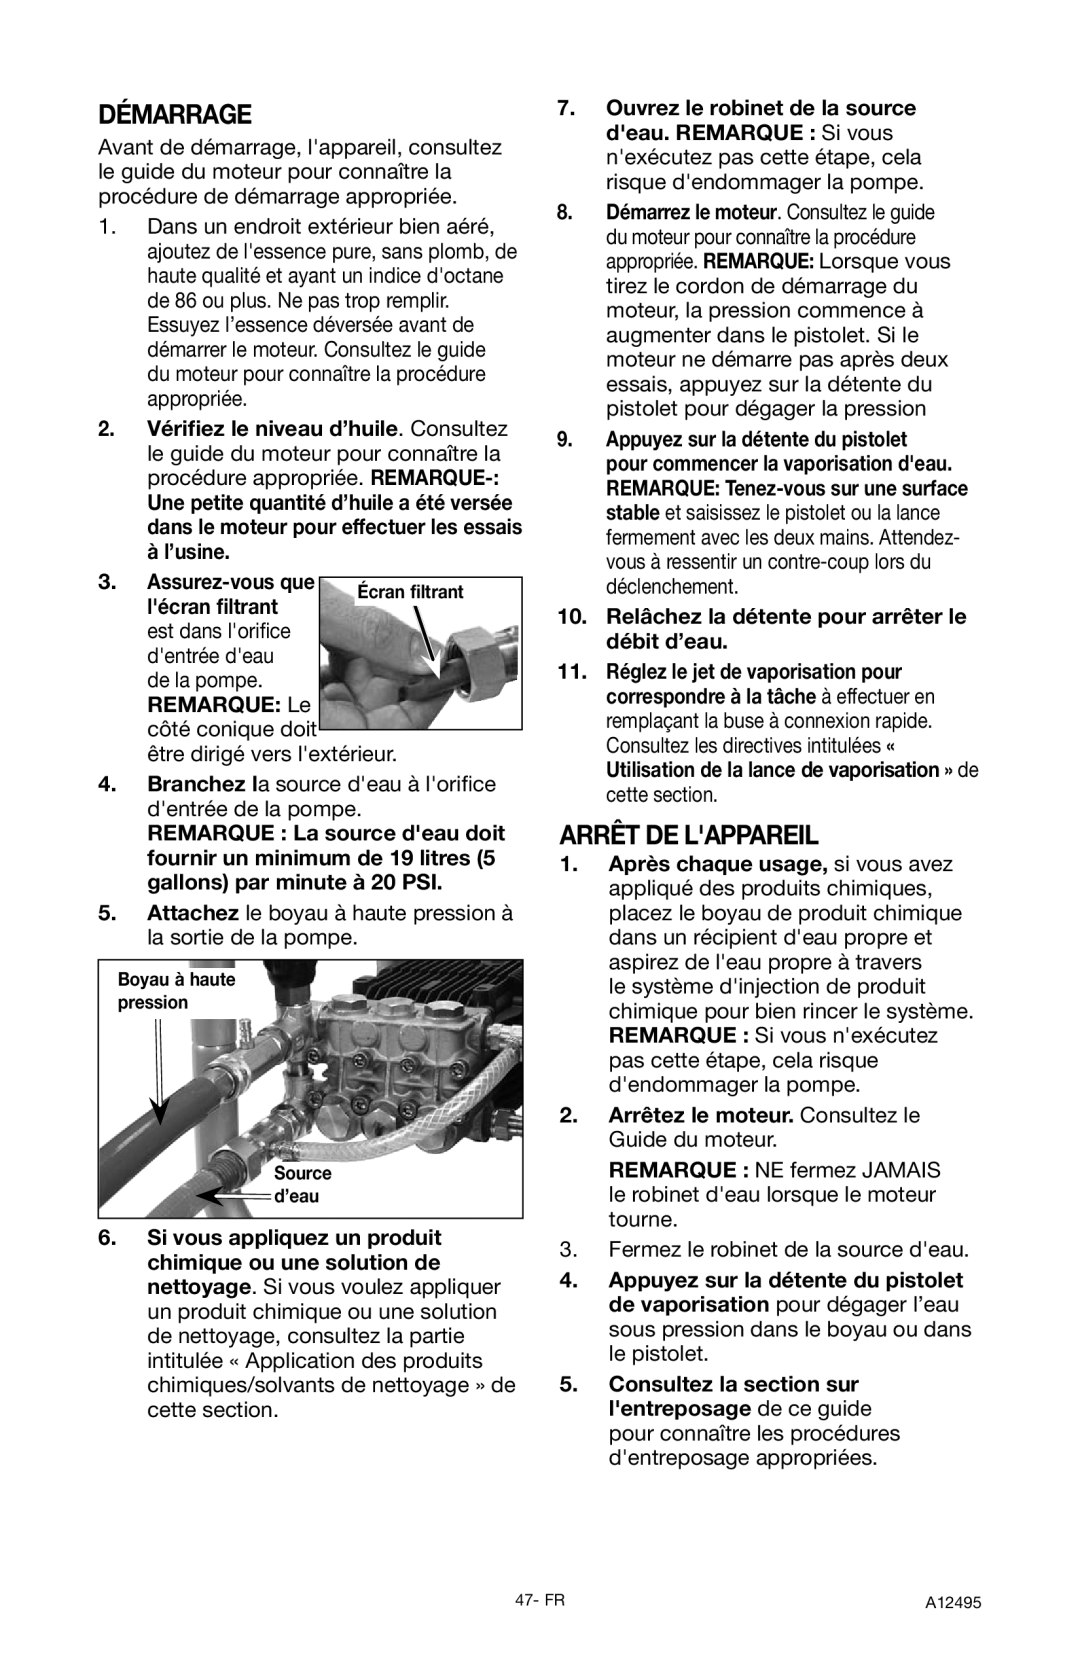 DeVillbiss Air Power Company A12495, PWH3635 operation manual Démarrage, Arrêt De Lappareil 